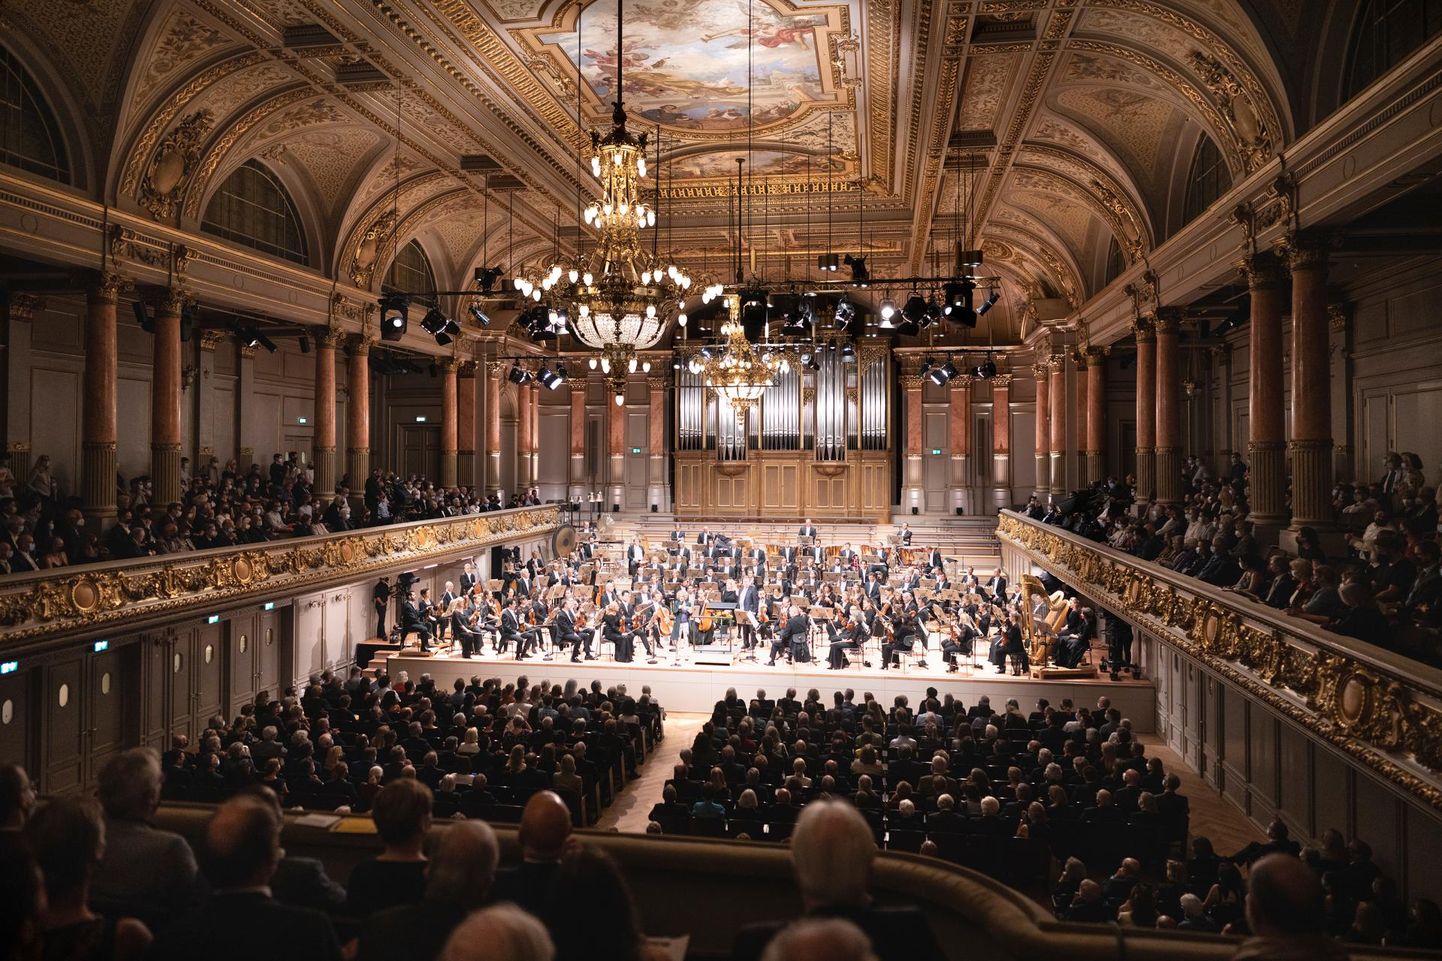 Ligi 200 miljonit Šveitsi franki maksma läinud Tonhalle kontserdimaja ja kongressikeskuse renoveerimine on Šveitsi ajaloos üks töömahukamaid ja finantsiliselt kallemaid renoveerimisprojekte ning esimene nullenergial töötav kultuuriobjekt.